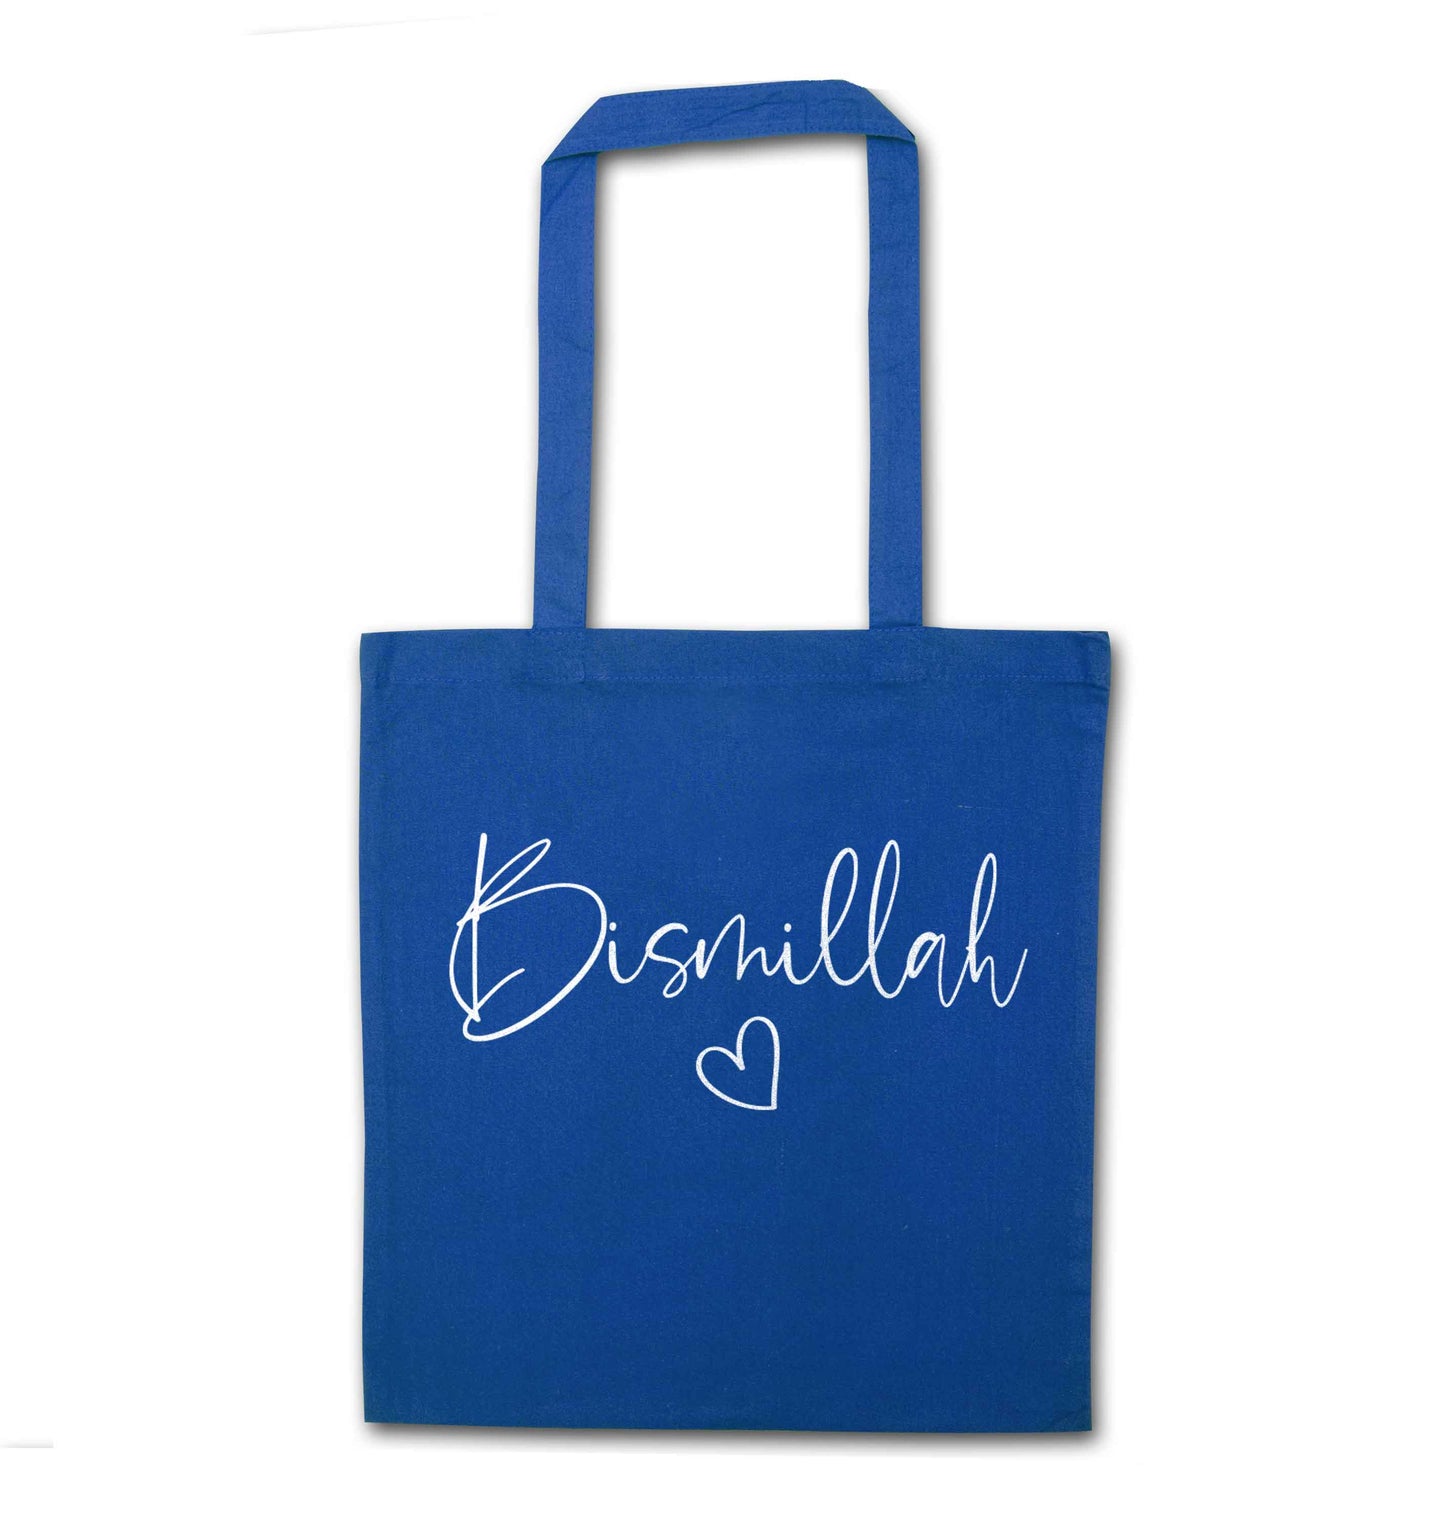 Bismillah blue tote bag